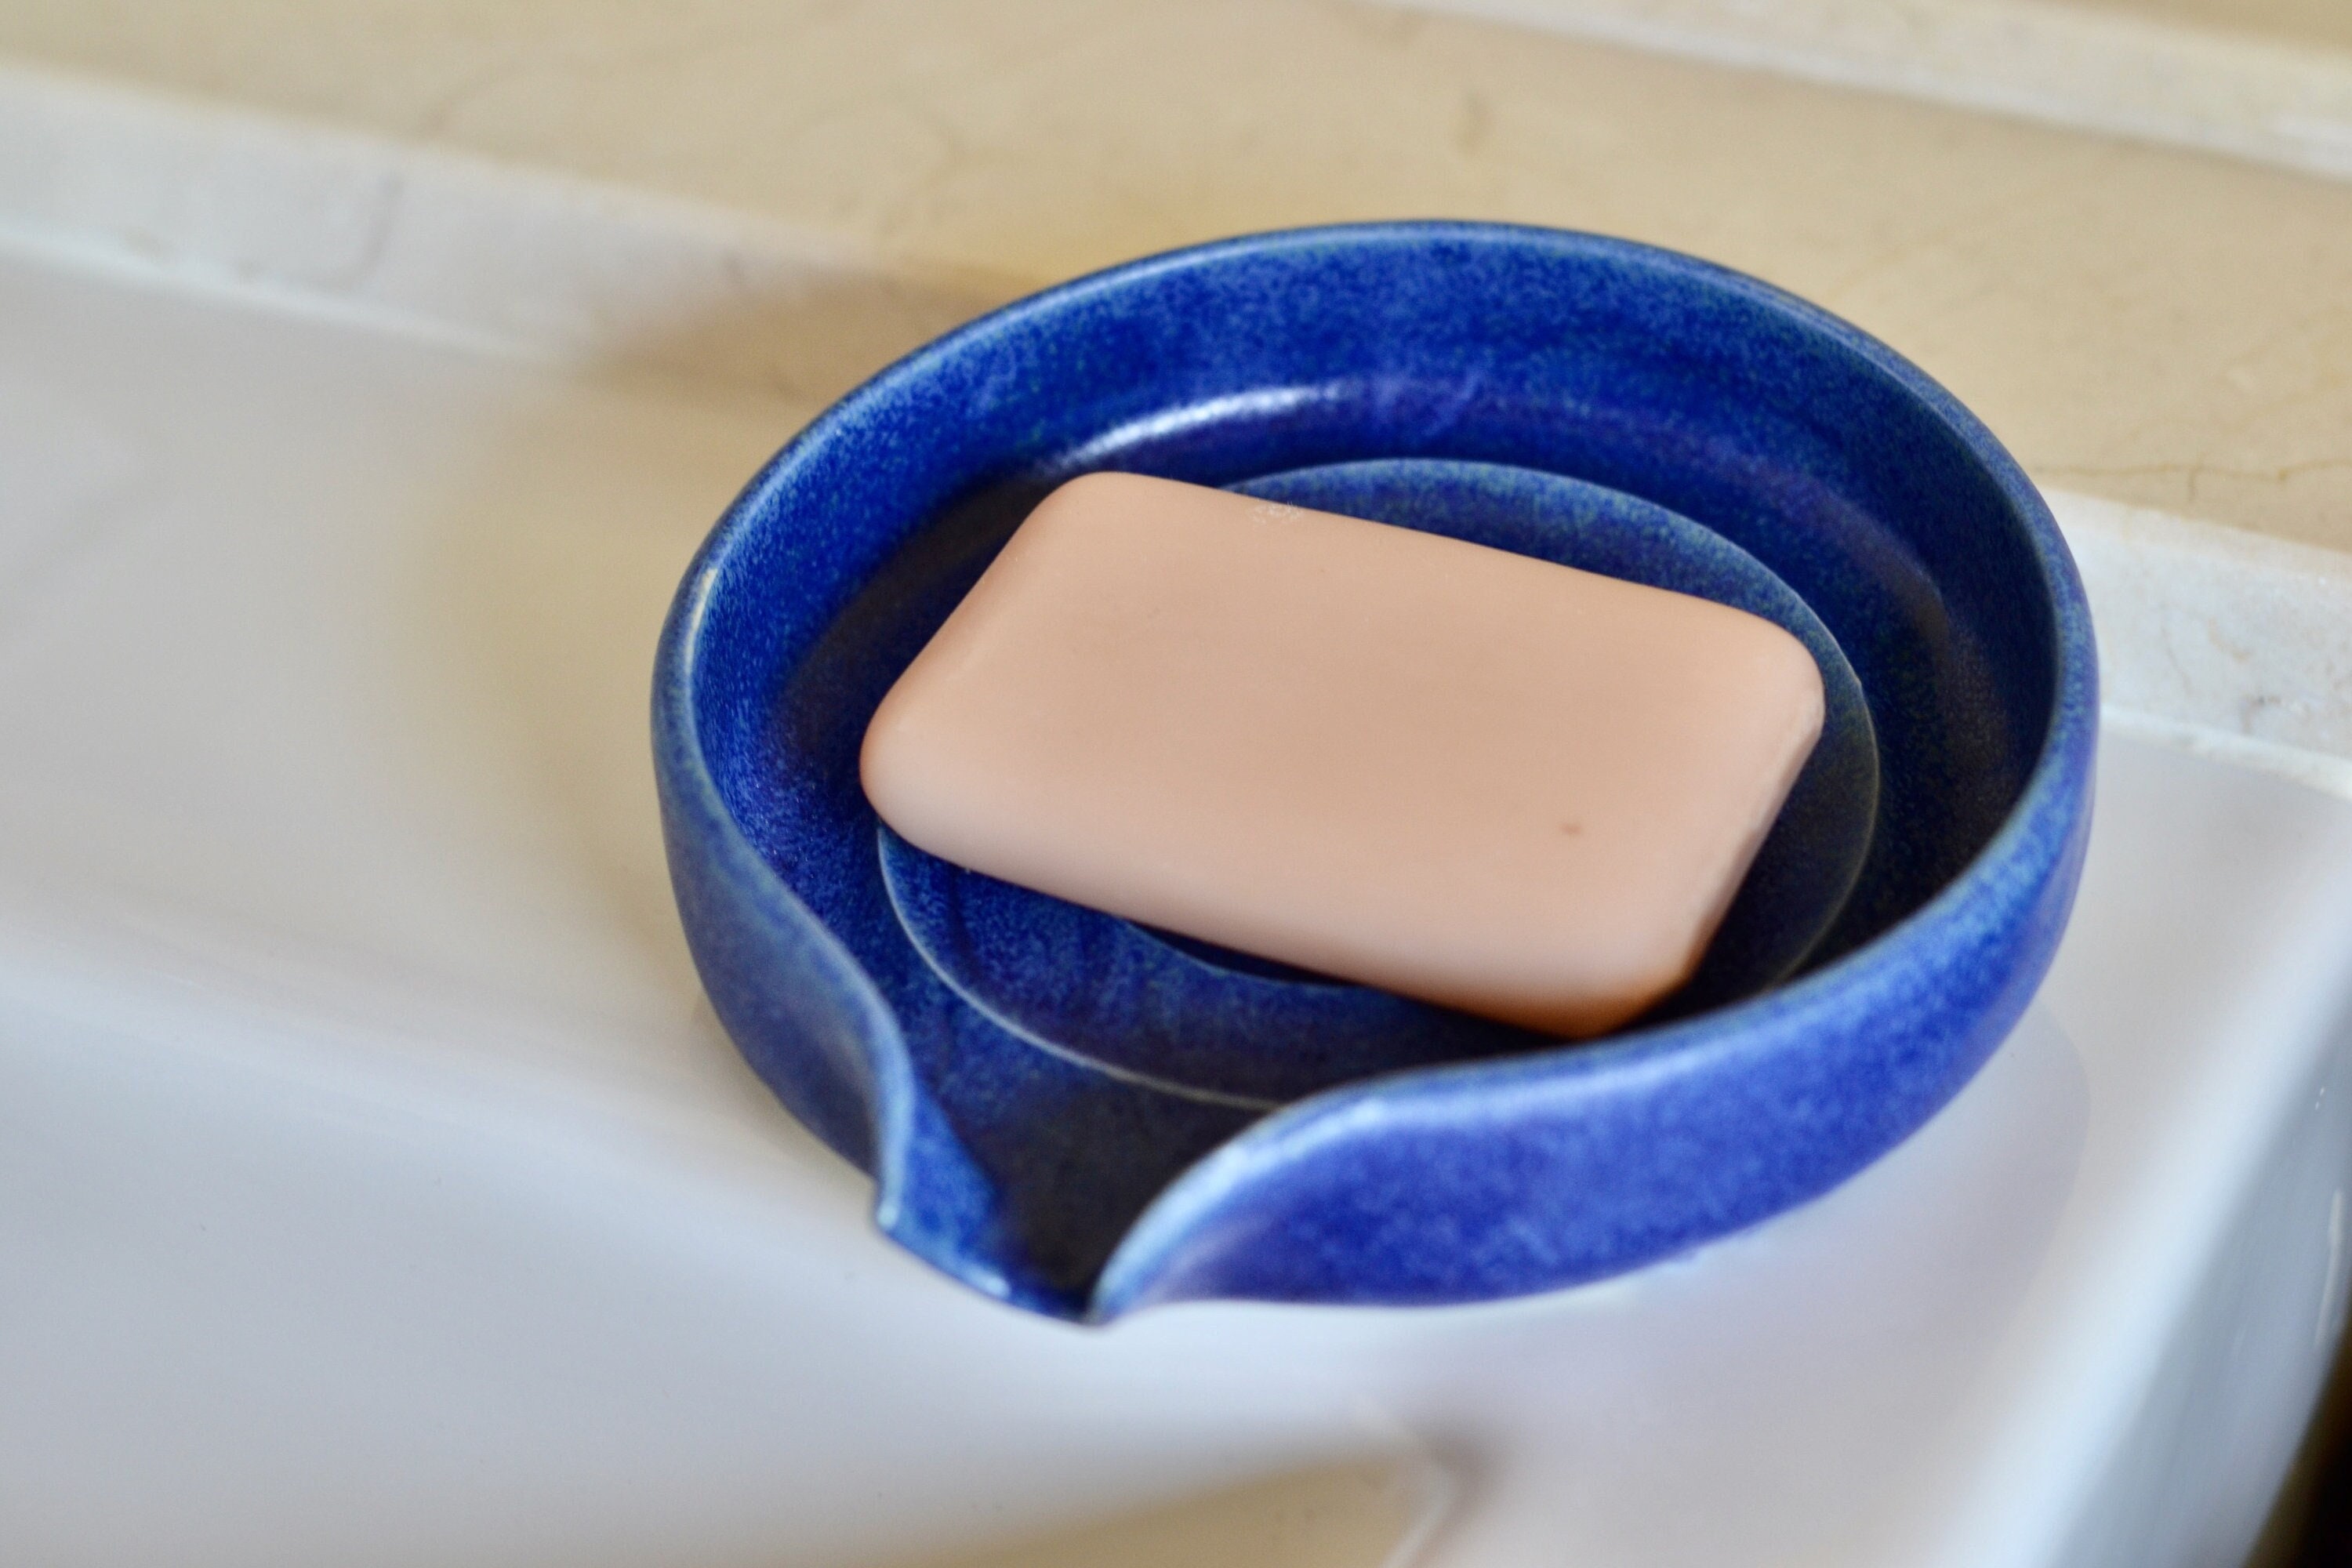 porte-savon romain, porte-savon autovideur, en céramique avec système de drainage, rond, porte-savon, porte éponge bleu bec